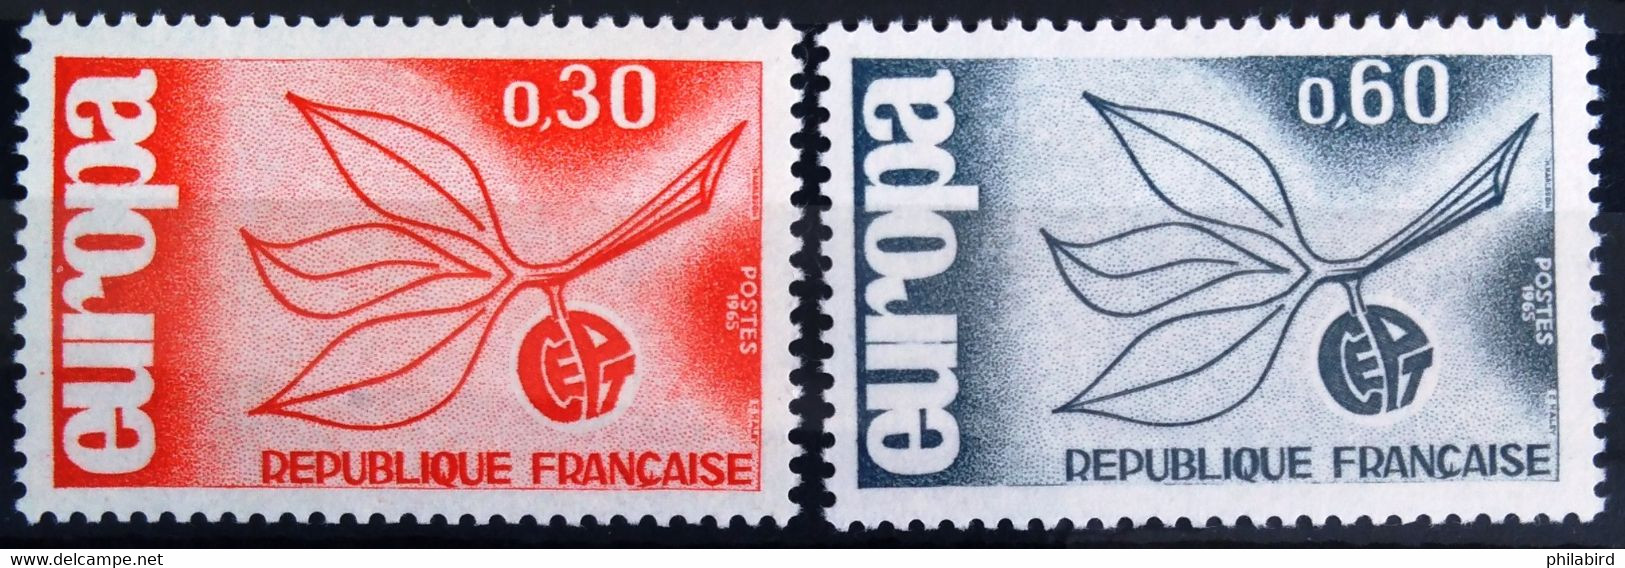 EUROPA 1965 - FRANCE                  N° 1455/1456                    NEUF* - 1965